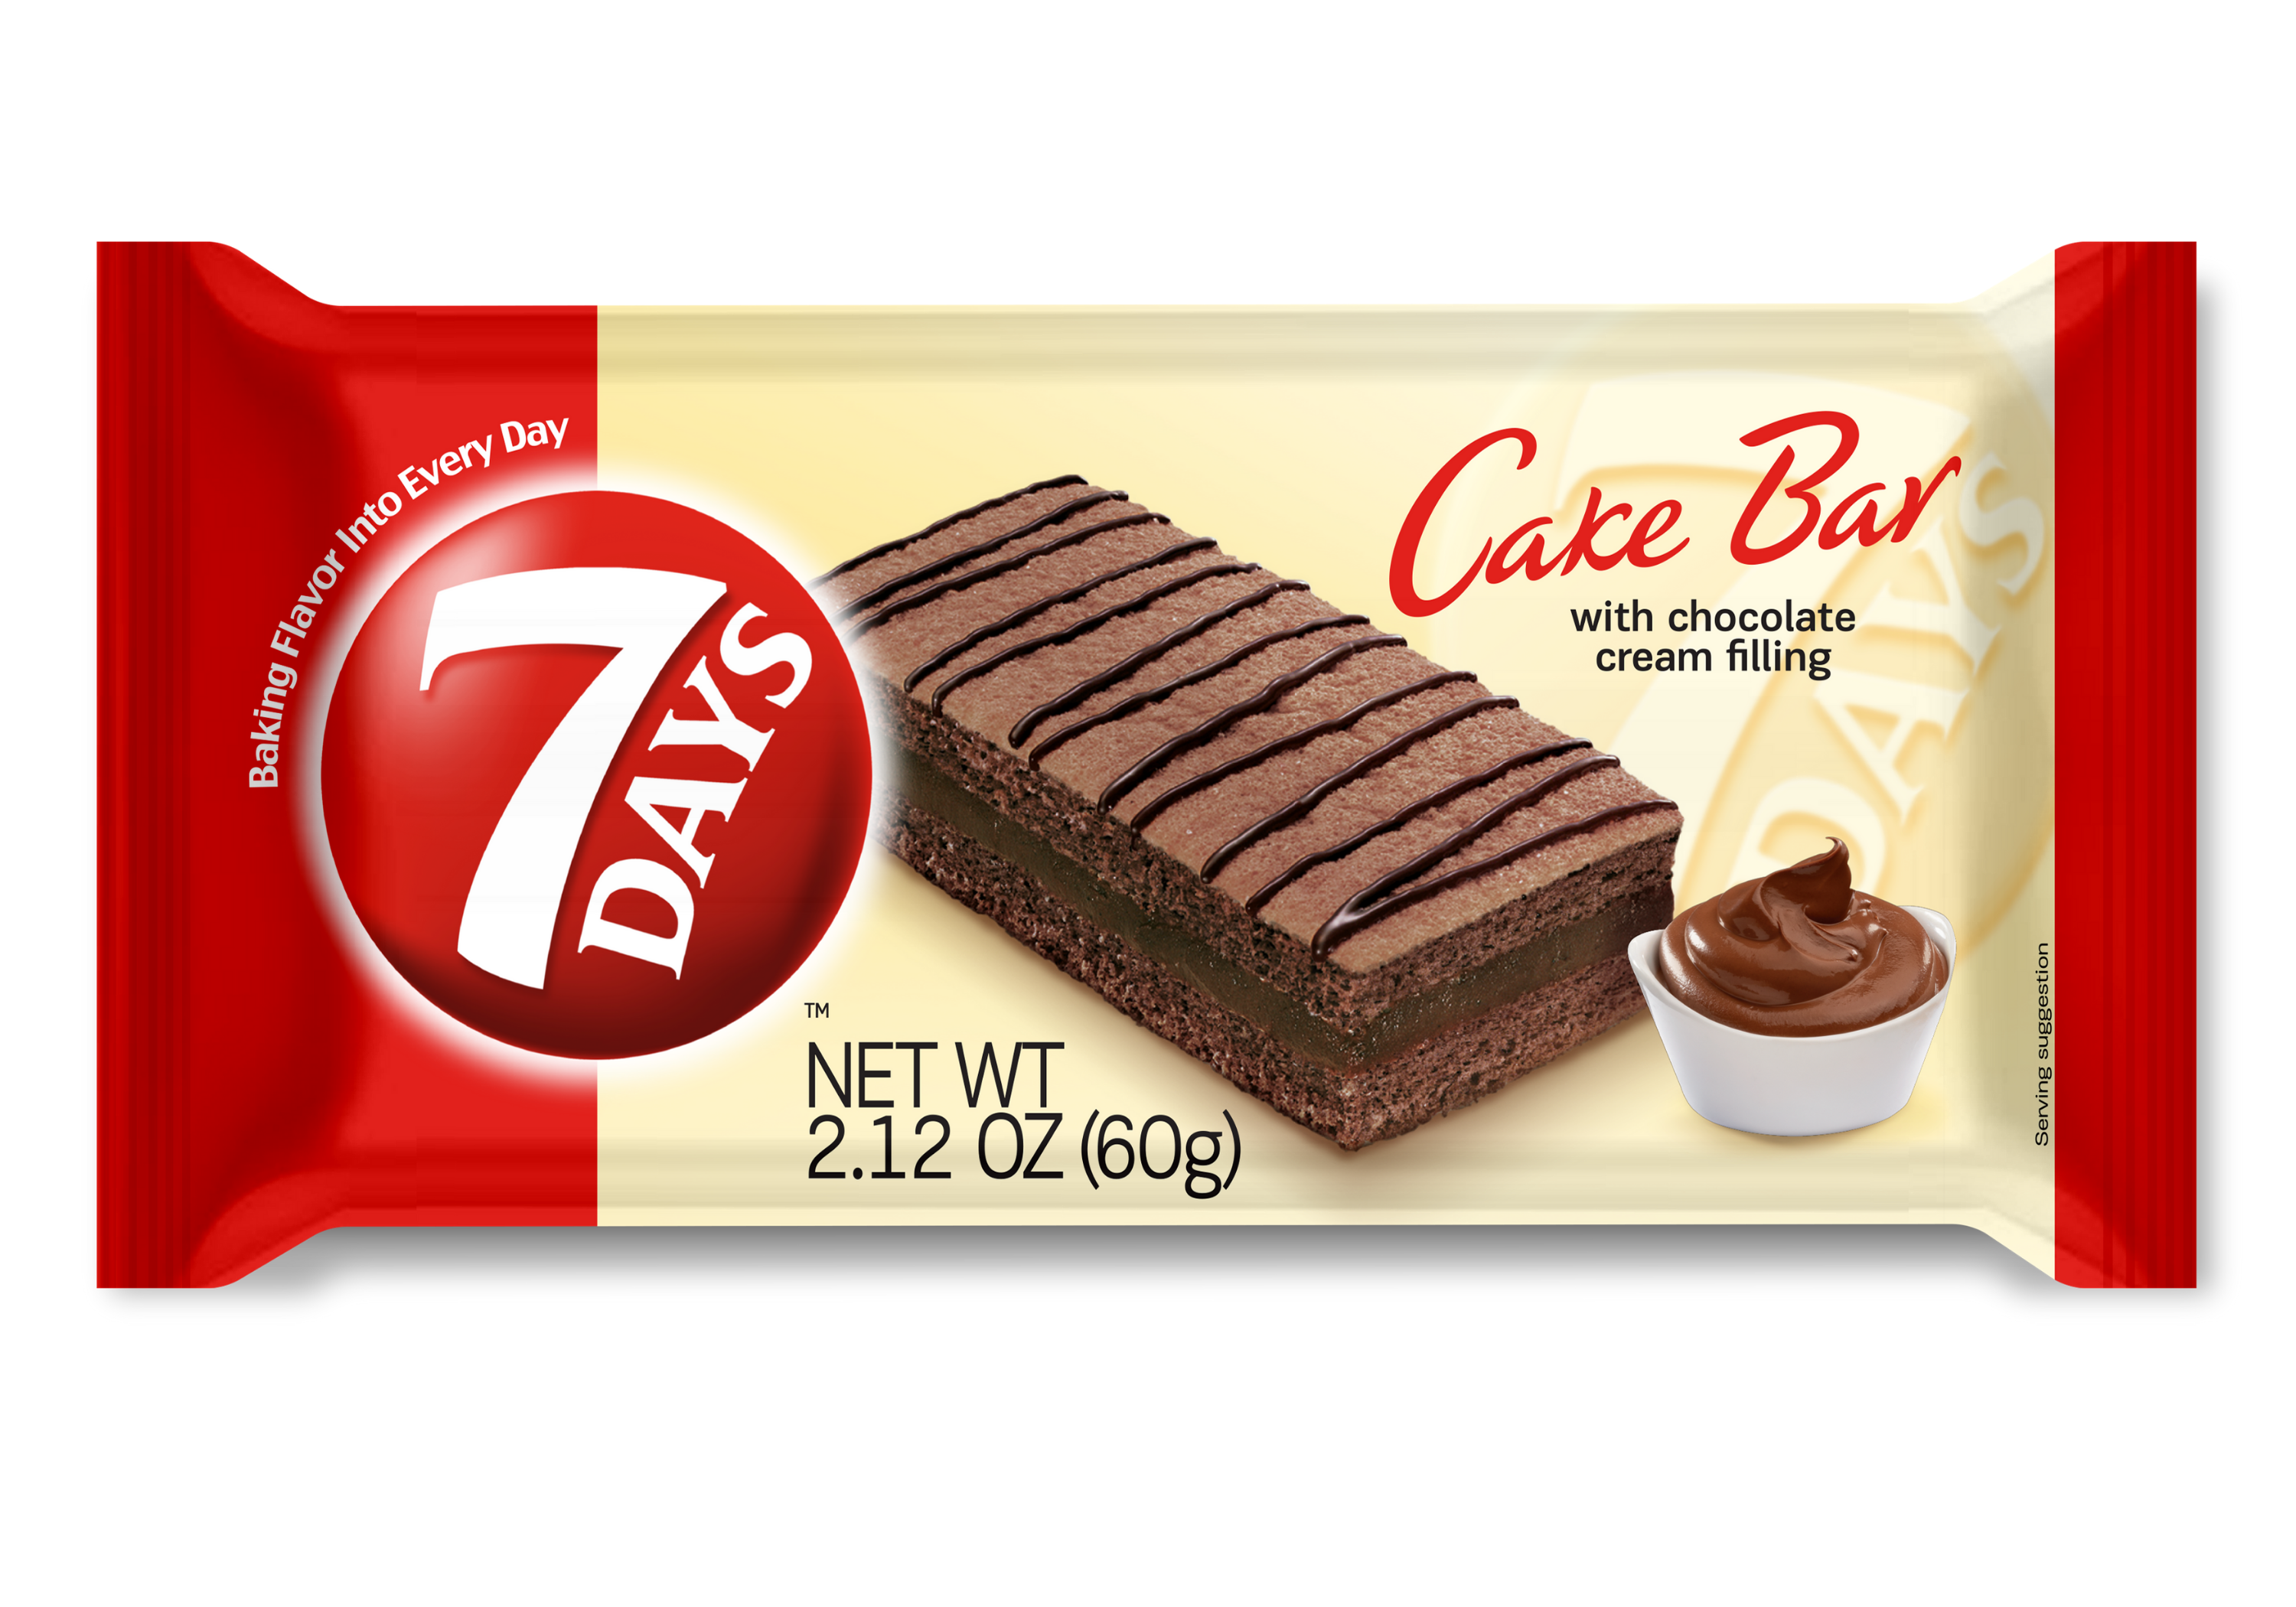 7 Days Cake Bar with Cocoa Cream 25 G price from danube in Saudi Arabia -  Yaoota!